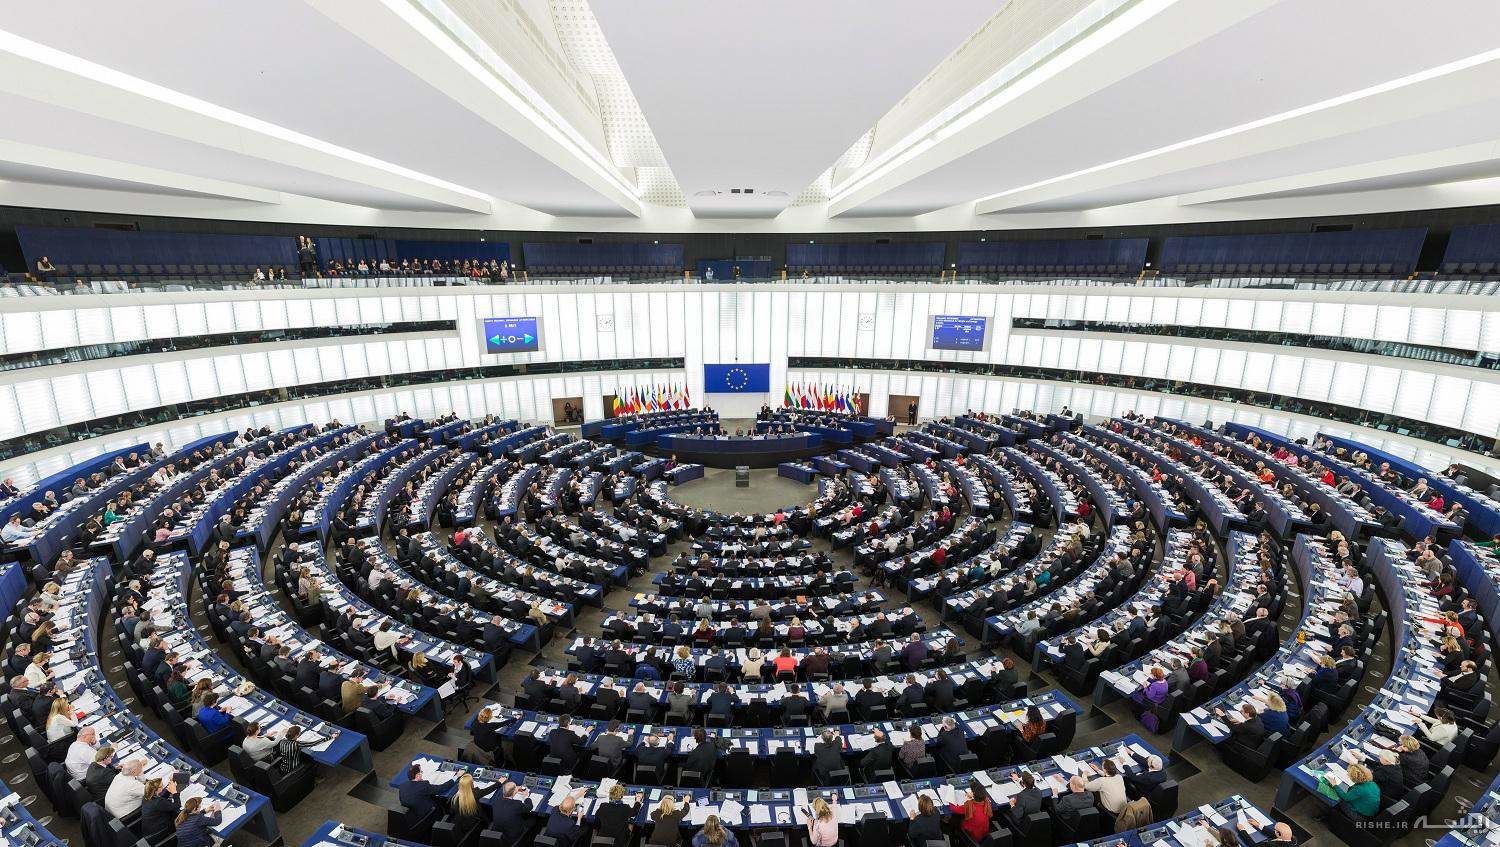 پارلمان اروپا قطعنامه علیه ایران و سپاه را تصویب کرد